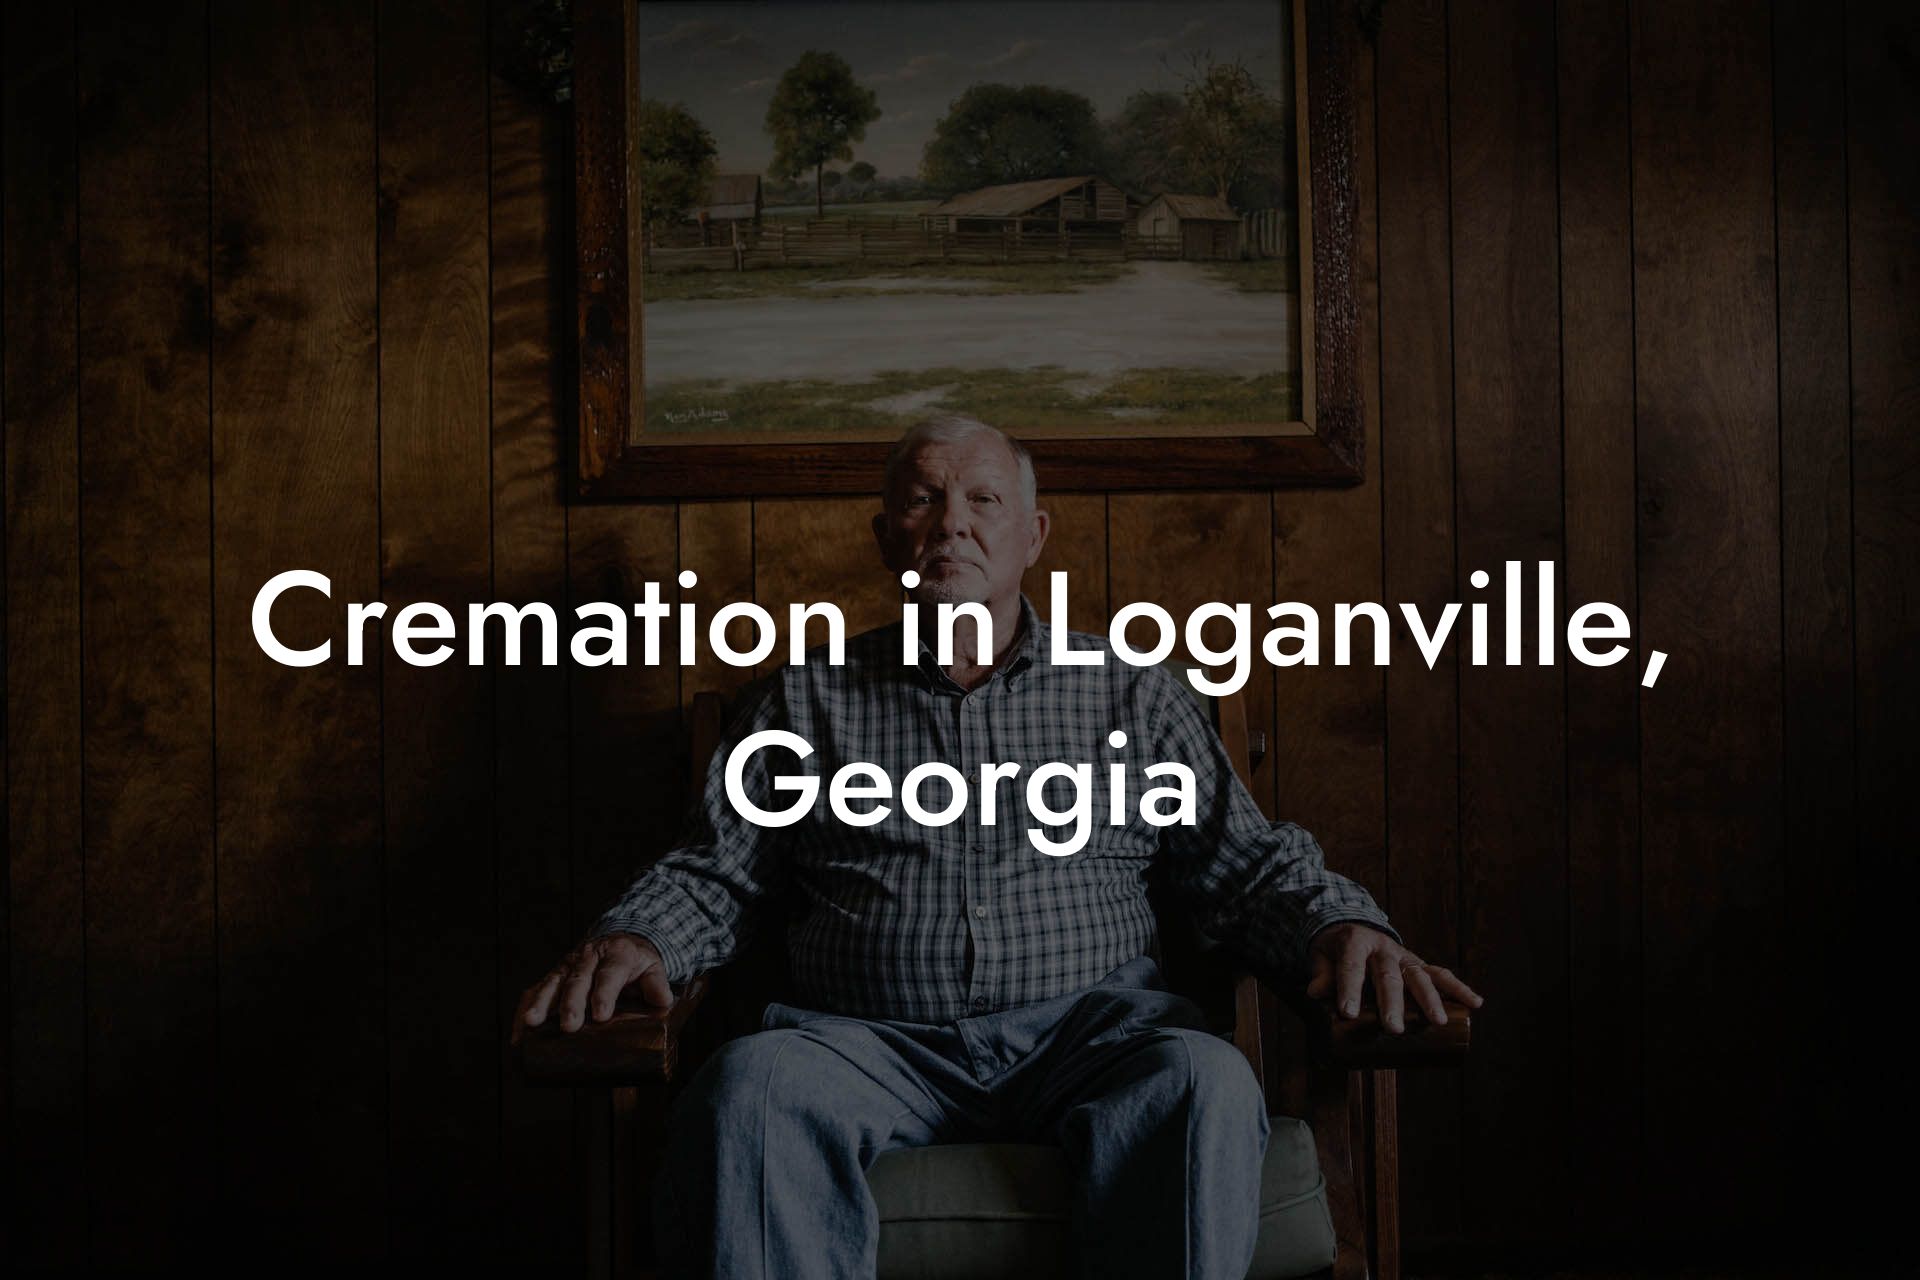 Cremation in Loganville, Georgia